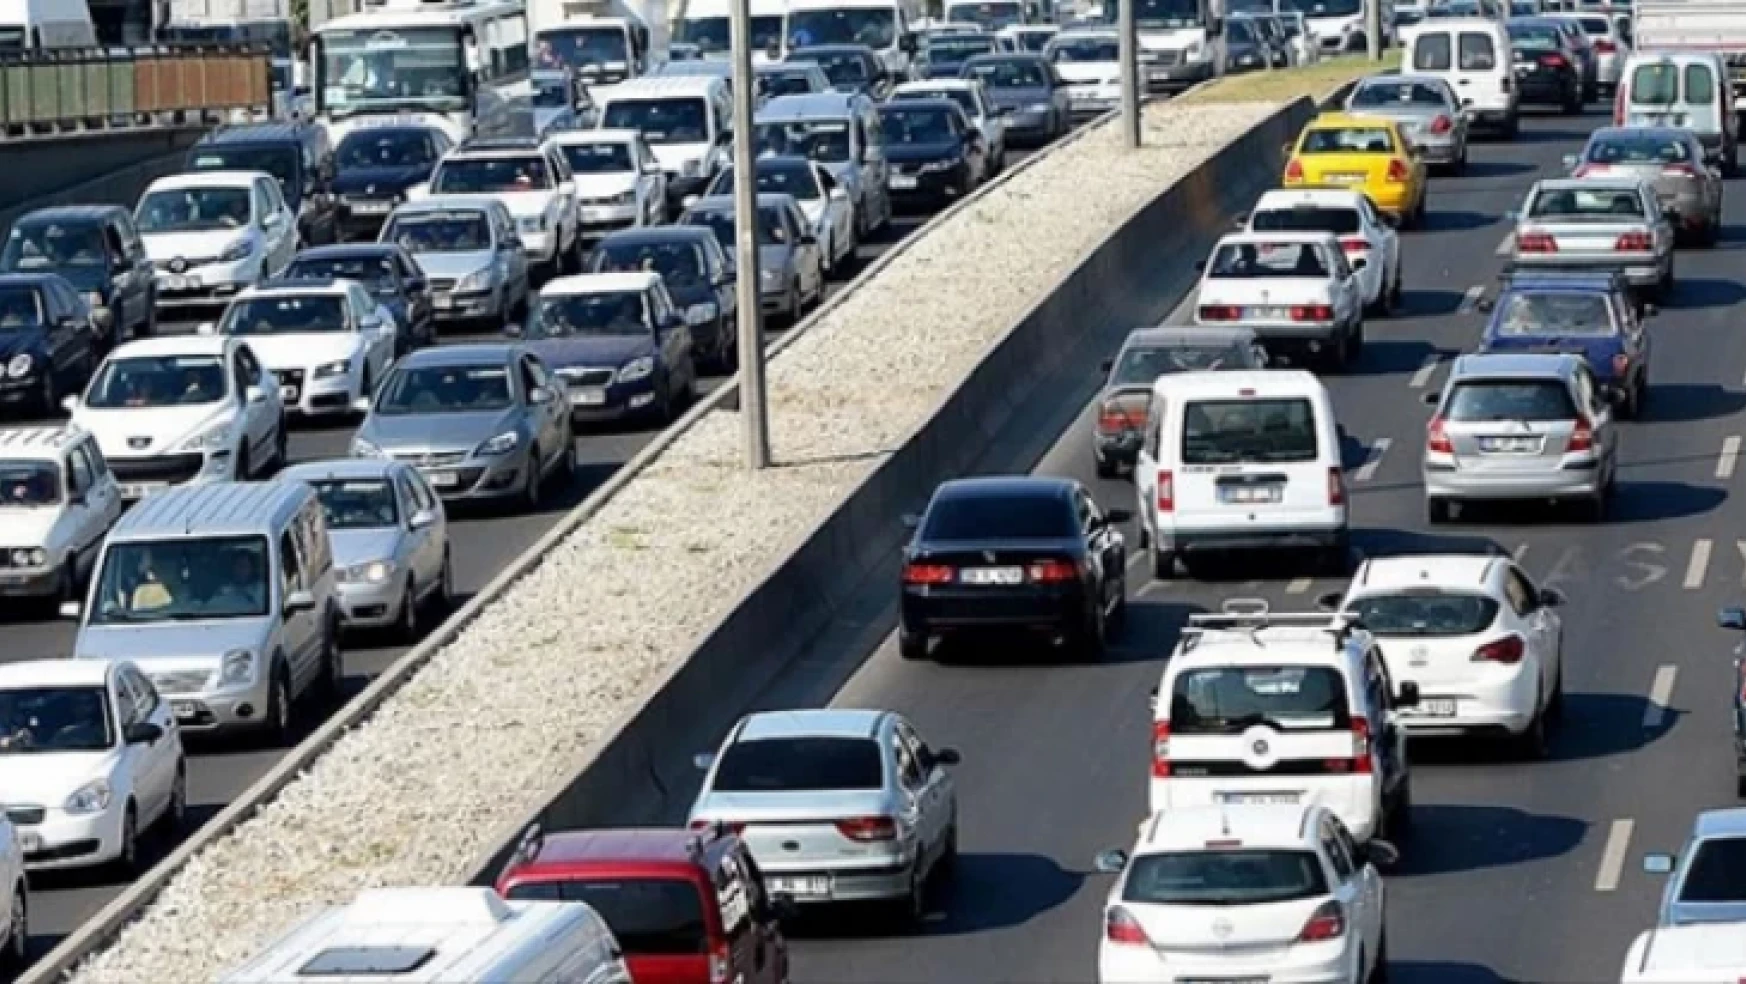 Malatya'da trafiğe kayıtlı araç sayısı Mayıs ayı sonu itibarıyla 174 639 oldu.